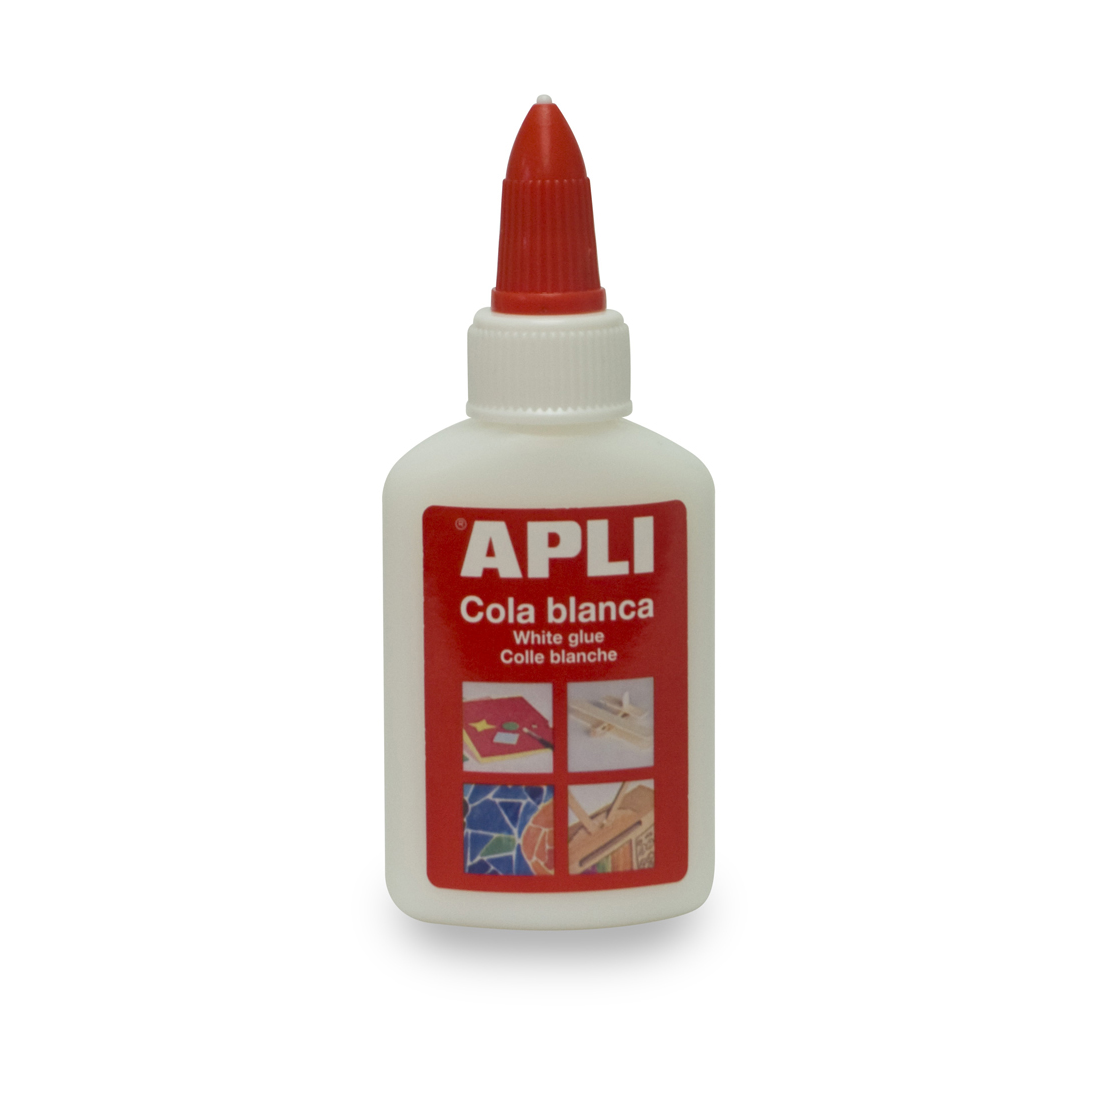 Lipici Apli 40 g alb non-toxic fara solventi